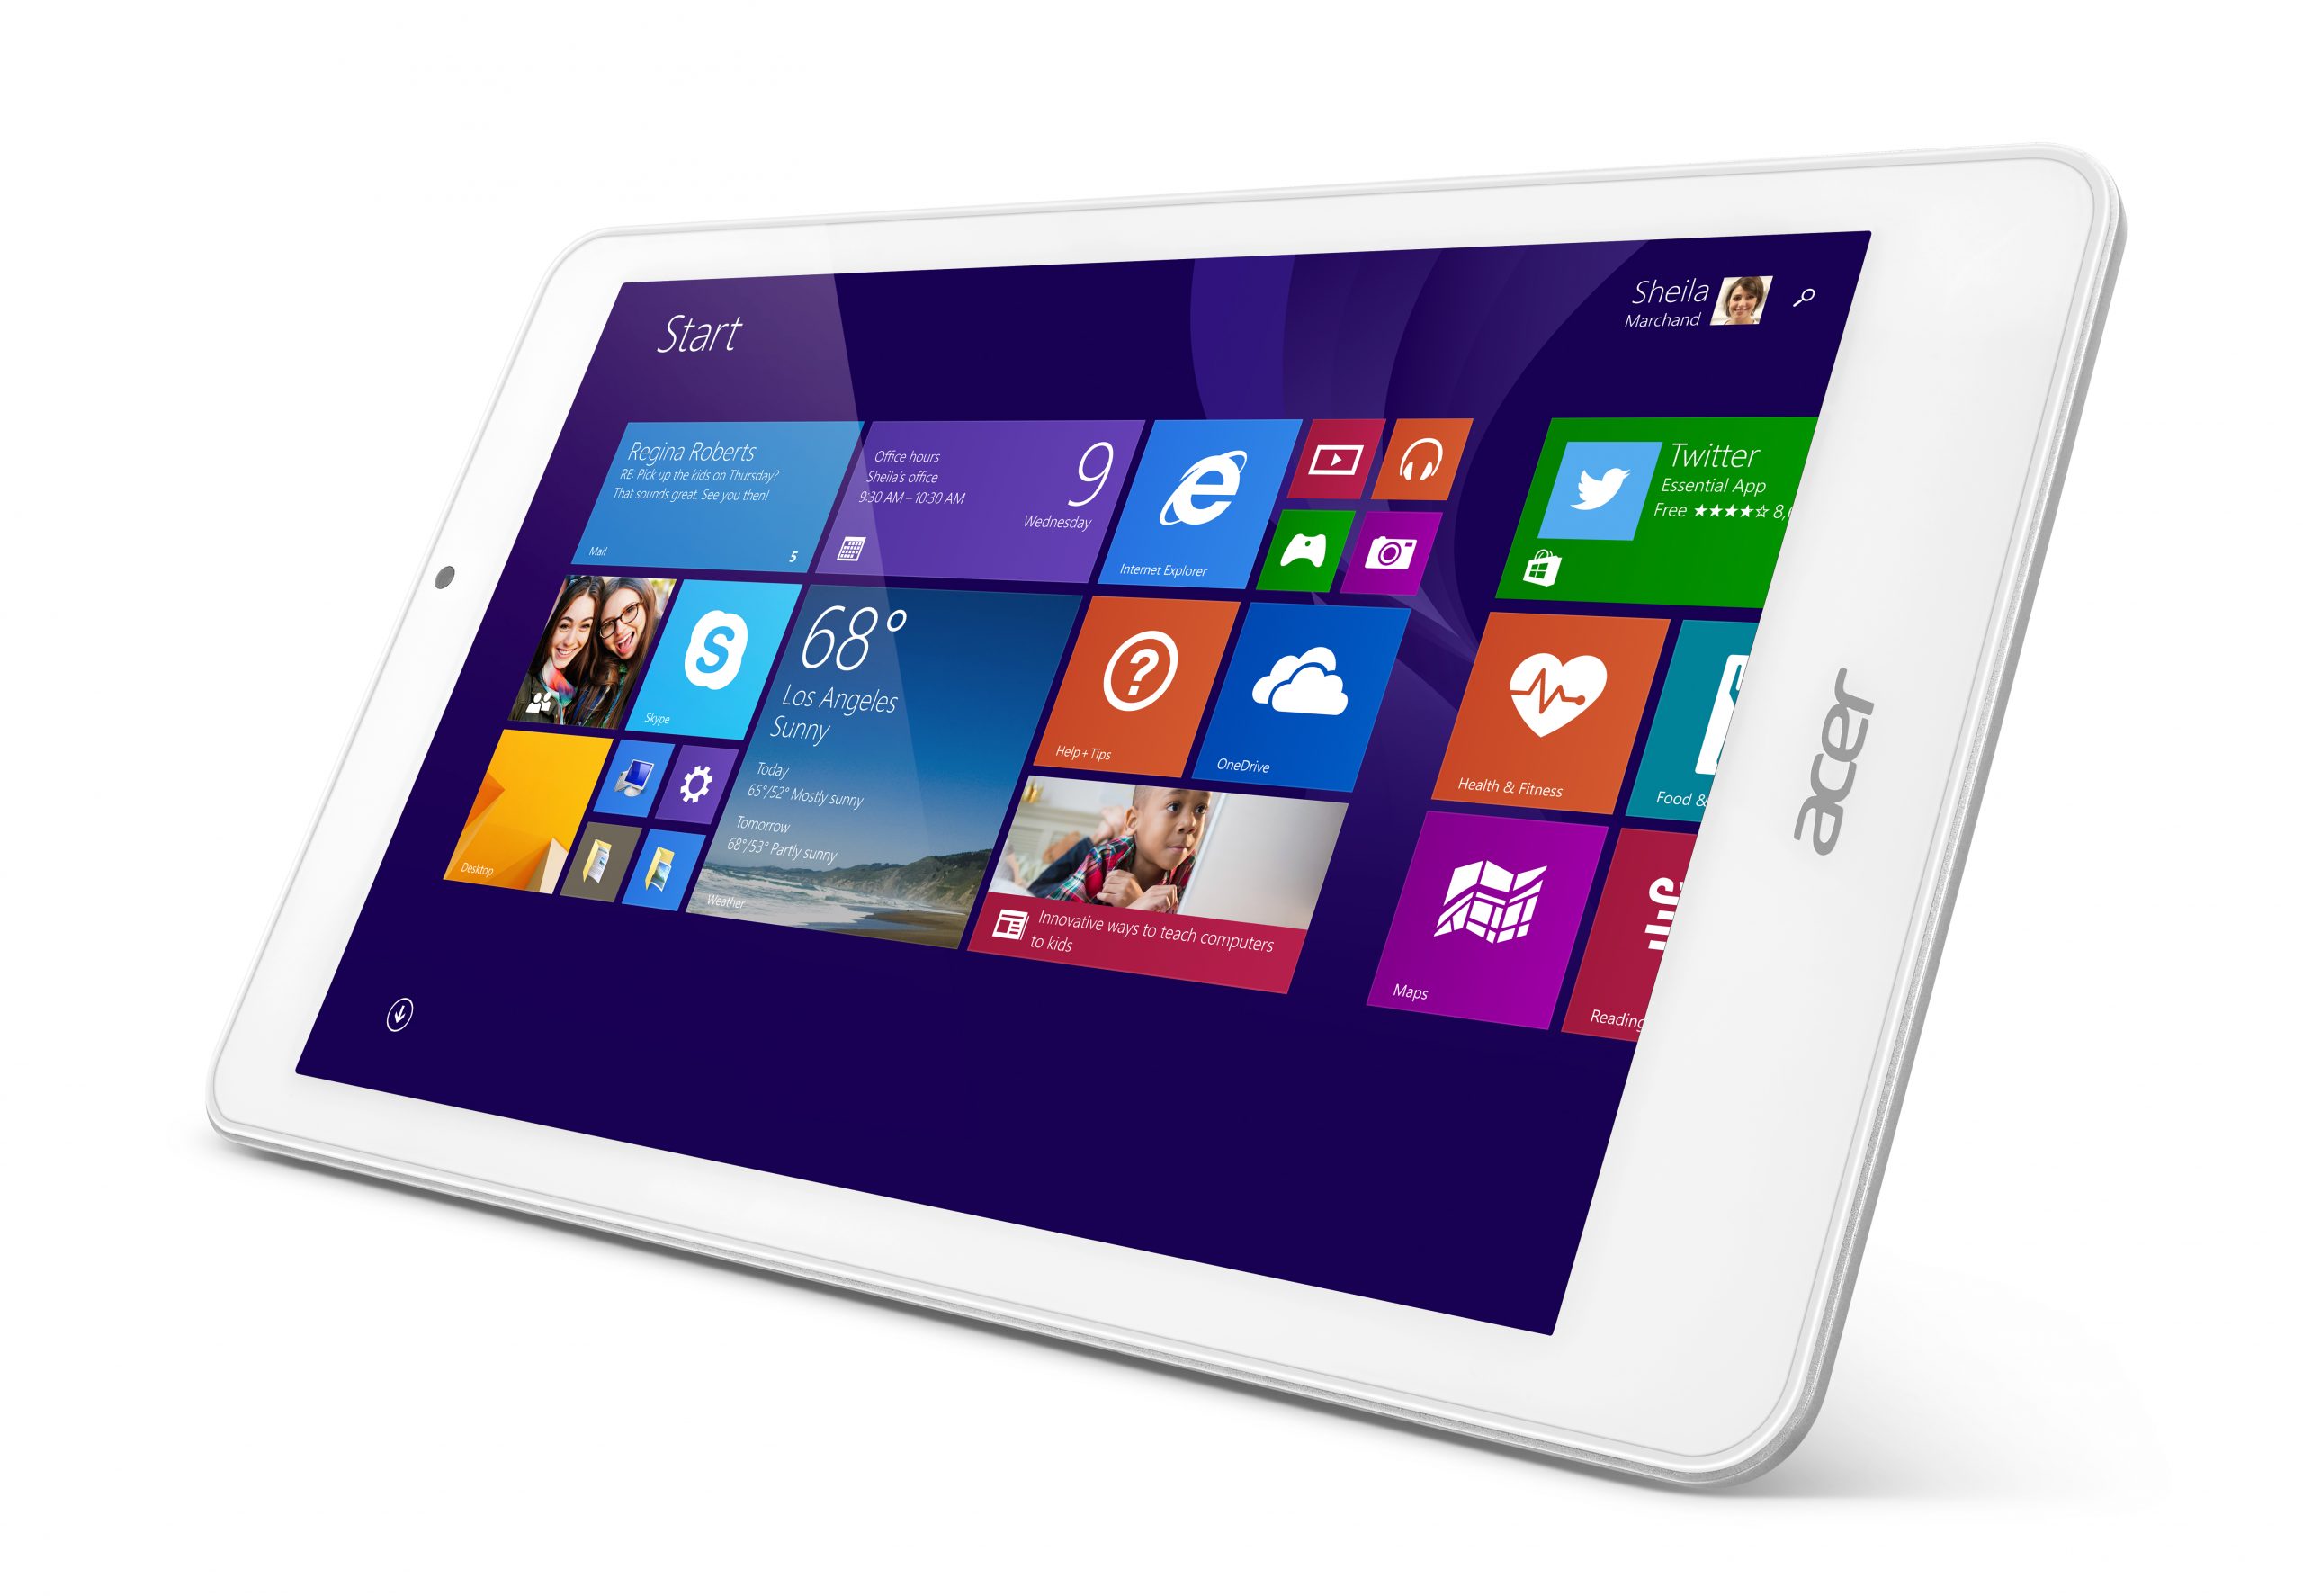 Acer Iconia Tab 8 W anunciada, ejecuta Windows 8.1 con Bing